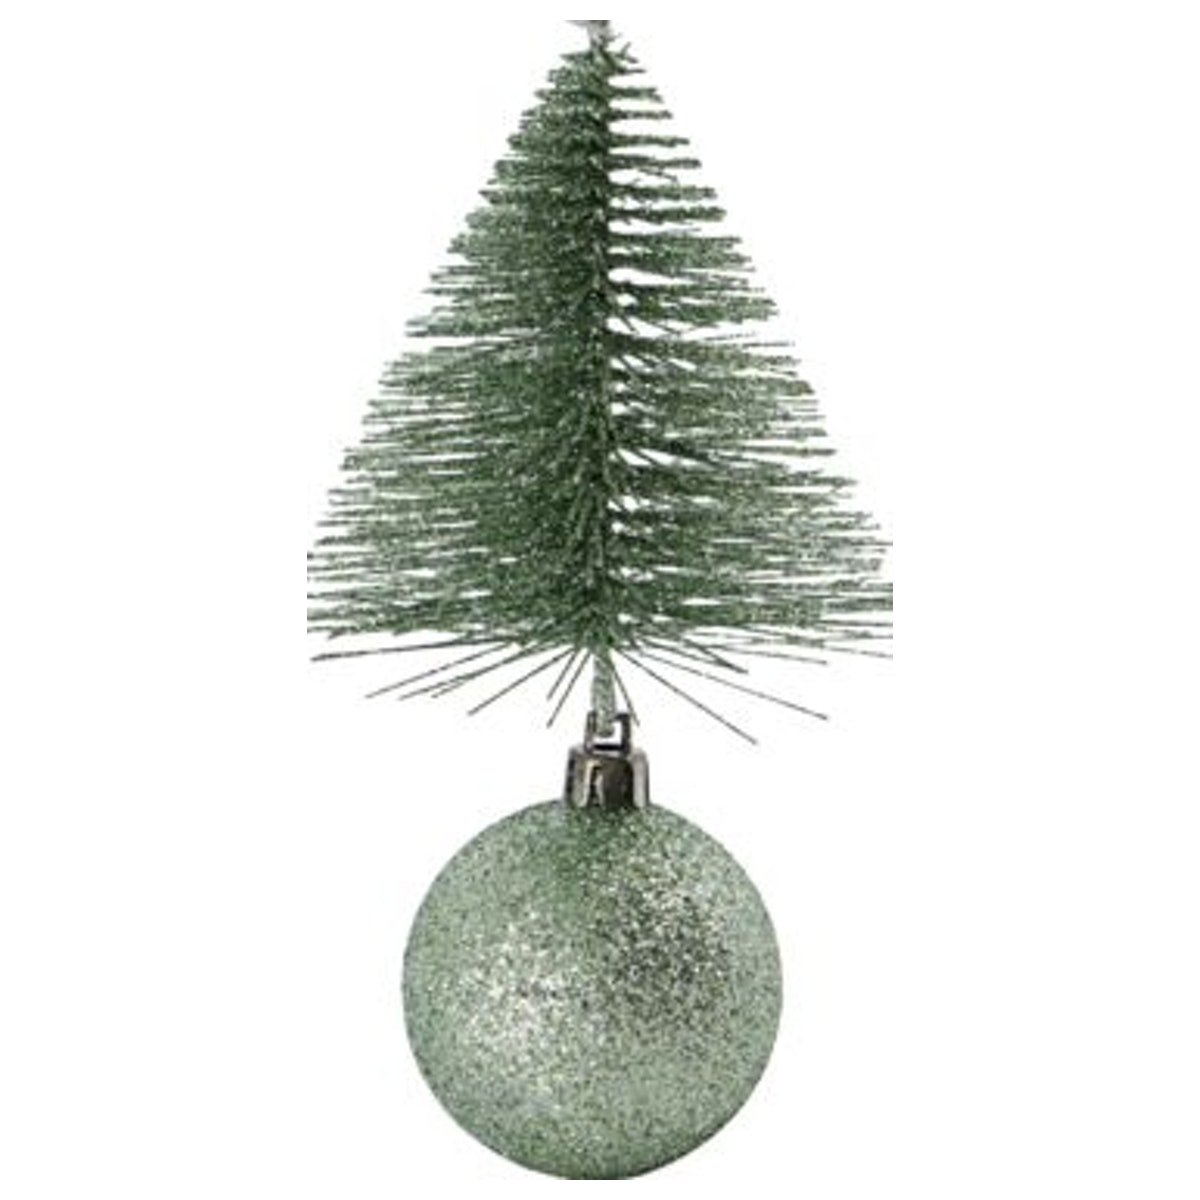 11: Julepynt, Tree & bell by House Doctor (H: 15 cm. B: 8 cm. L: 8 cm., Grøn)